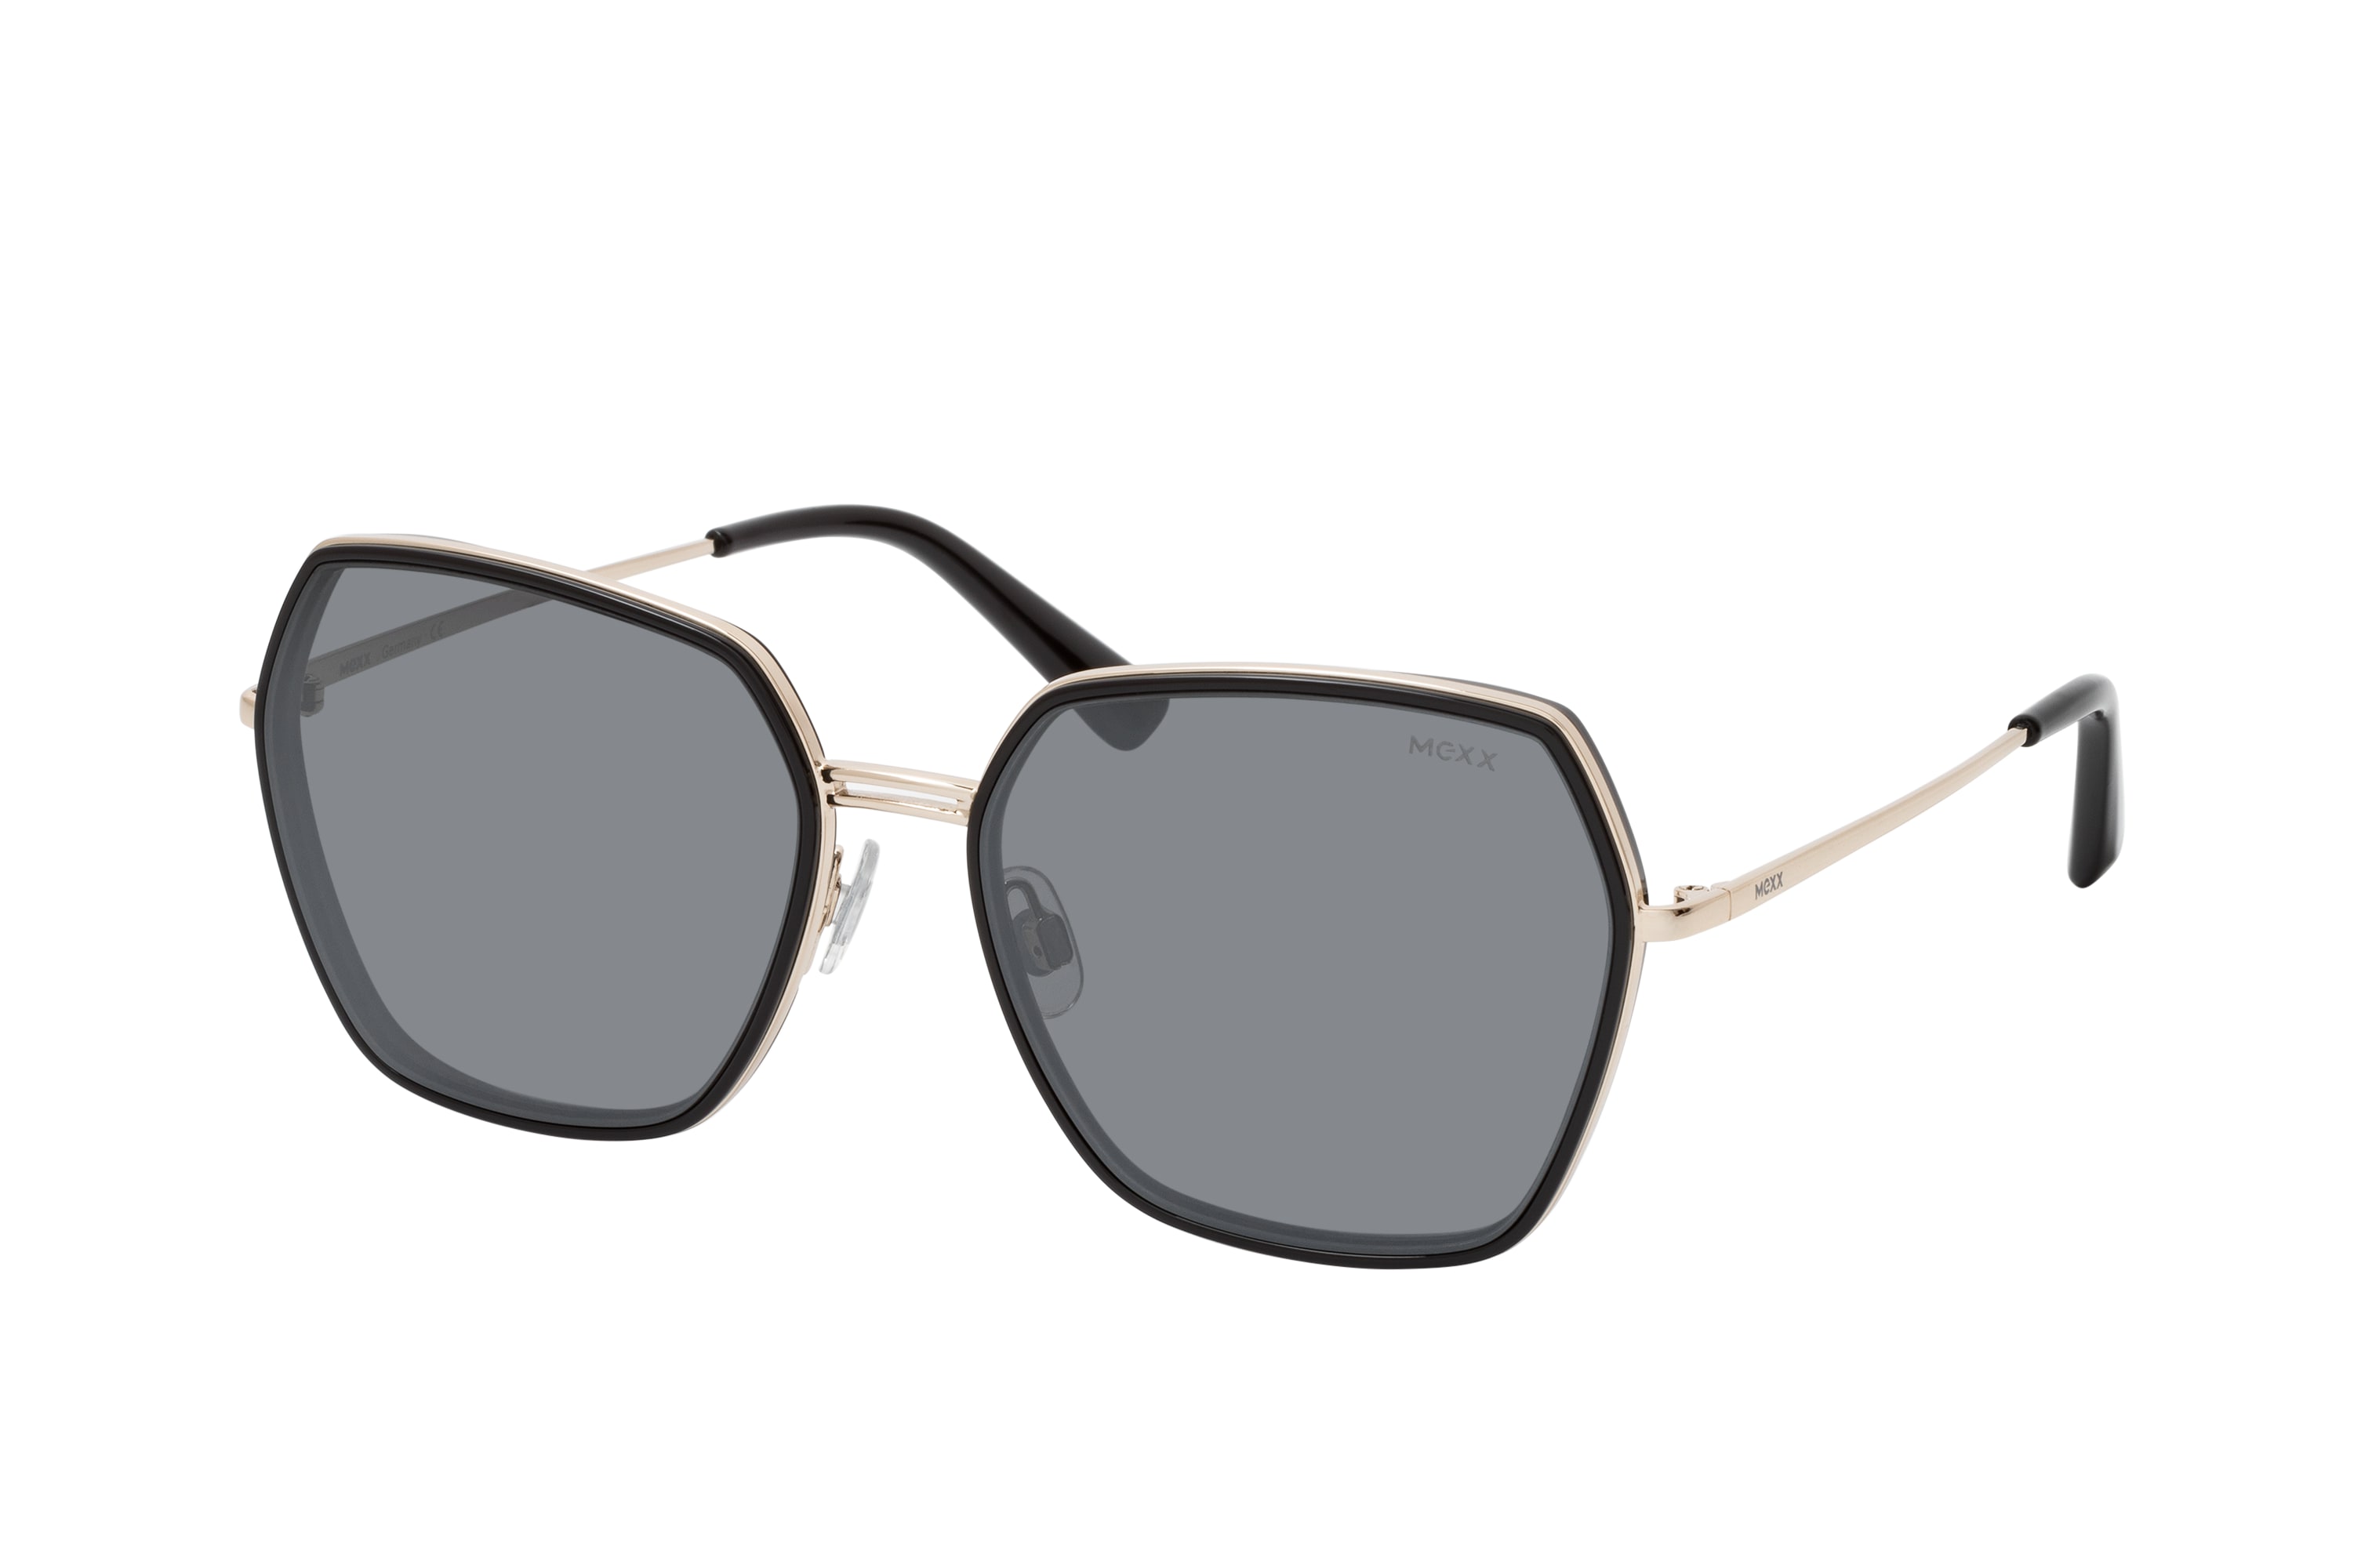 Reis Vallen Sluier Buy Mexx 6506 100 Sunglasses